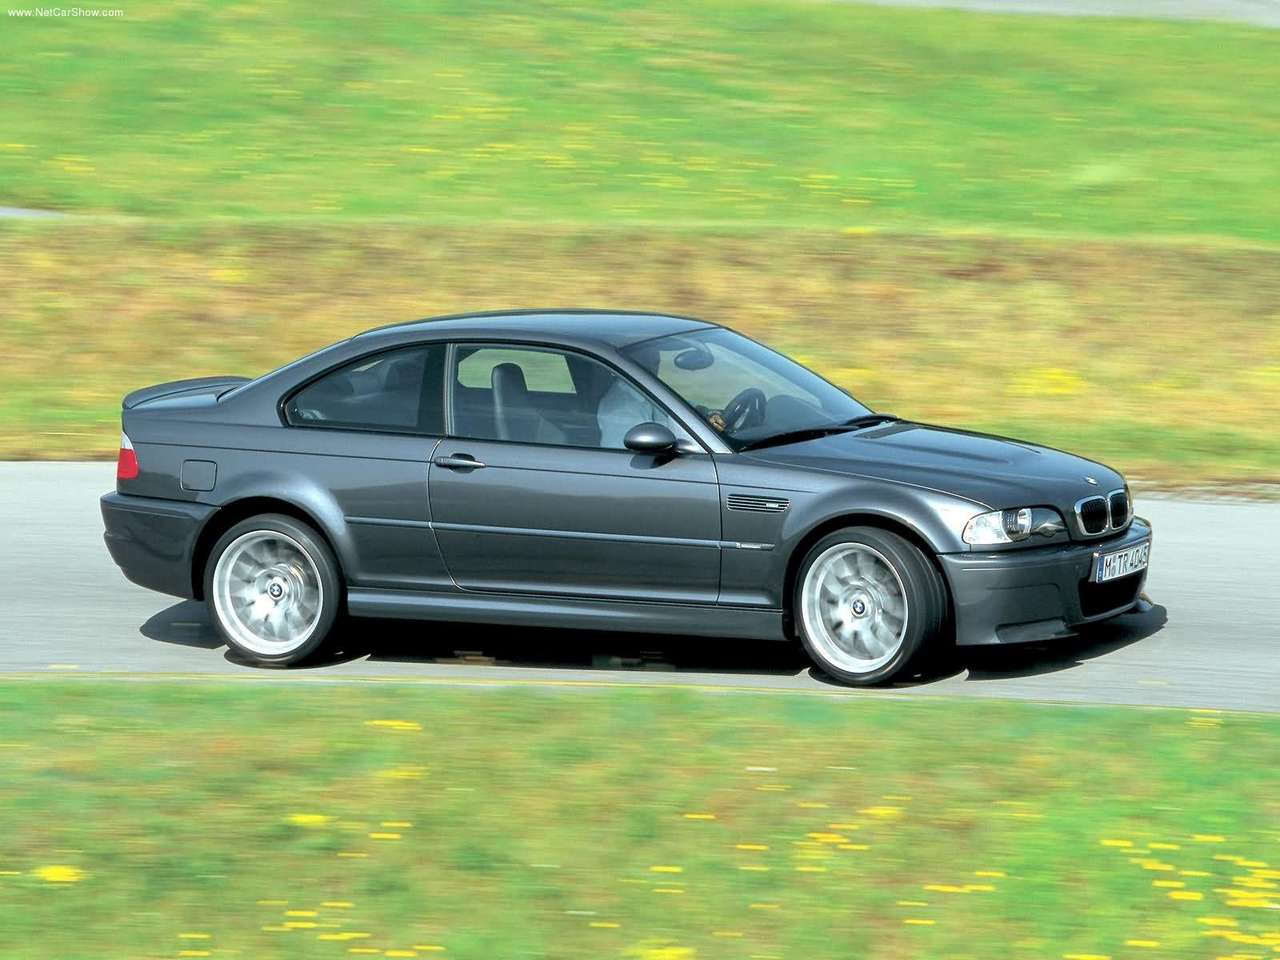 BMW - Auto twenty-first century: 2003 BMW M3 CSL